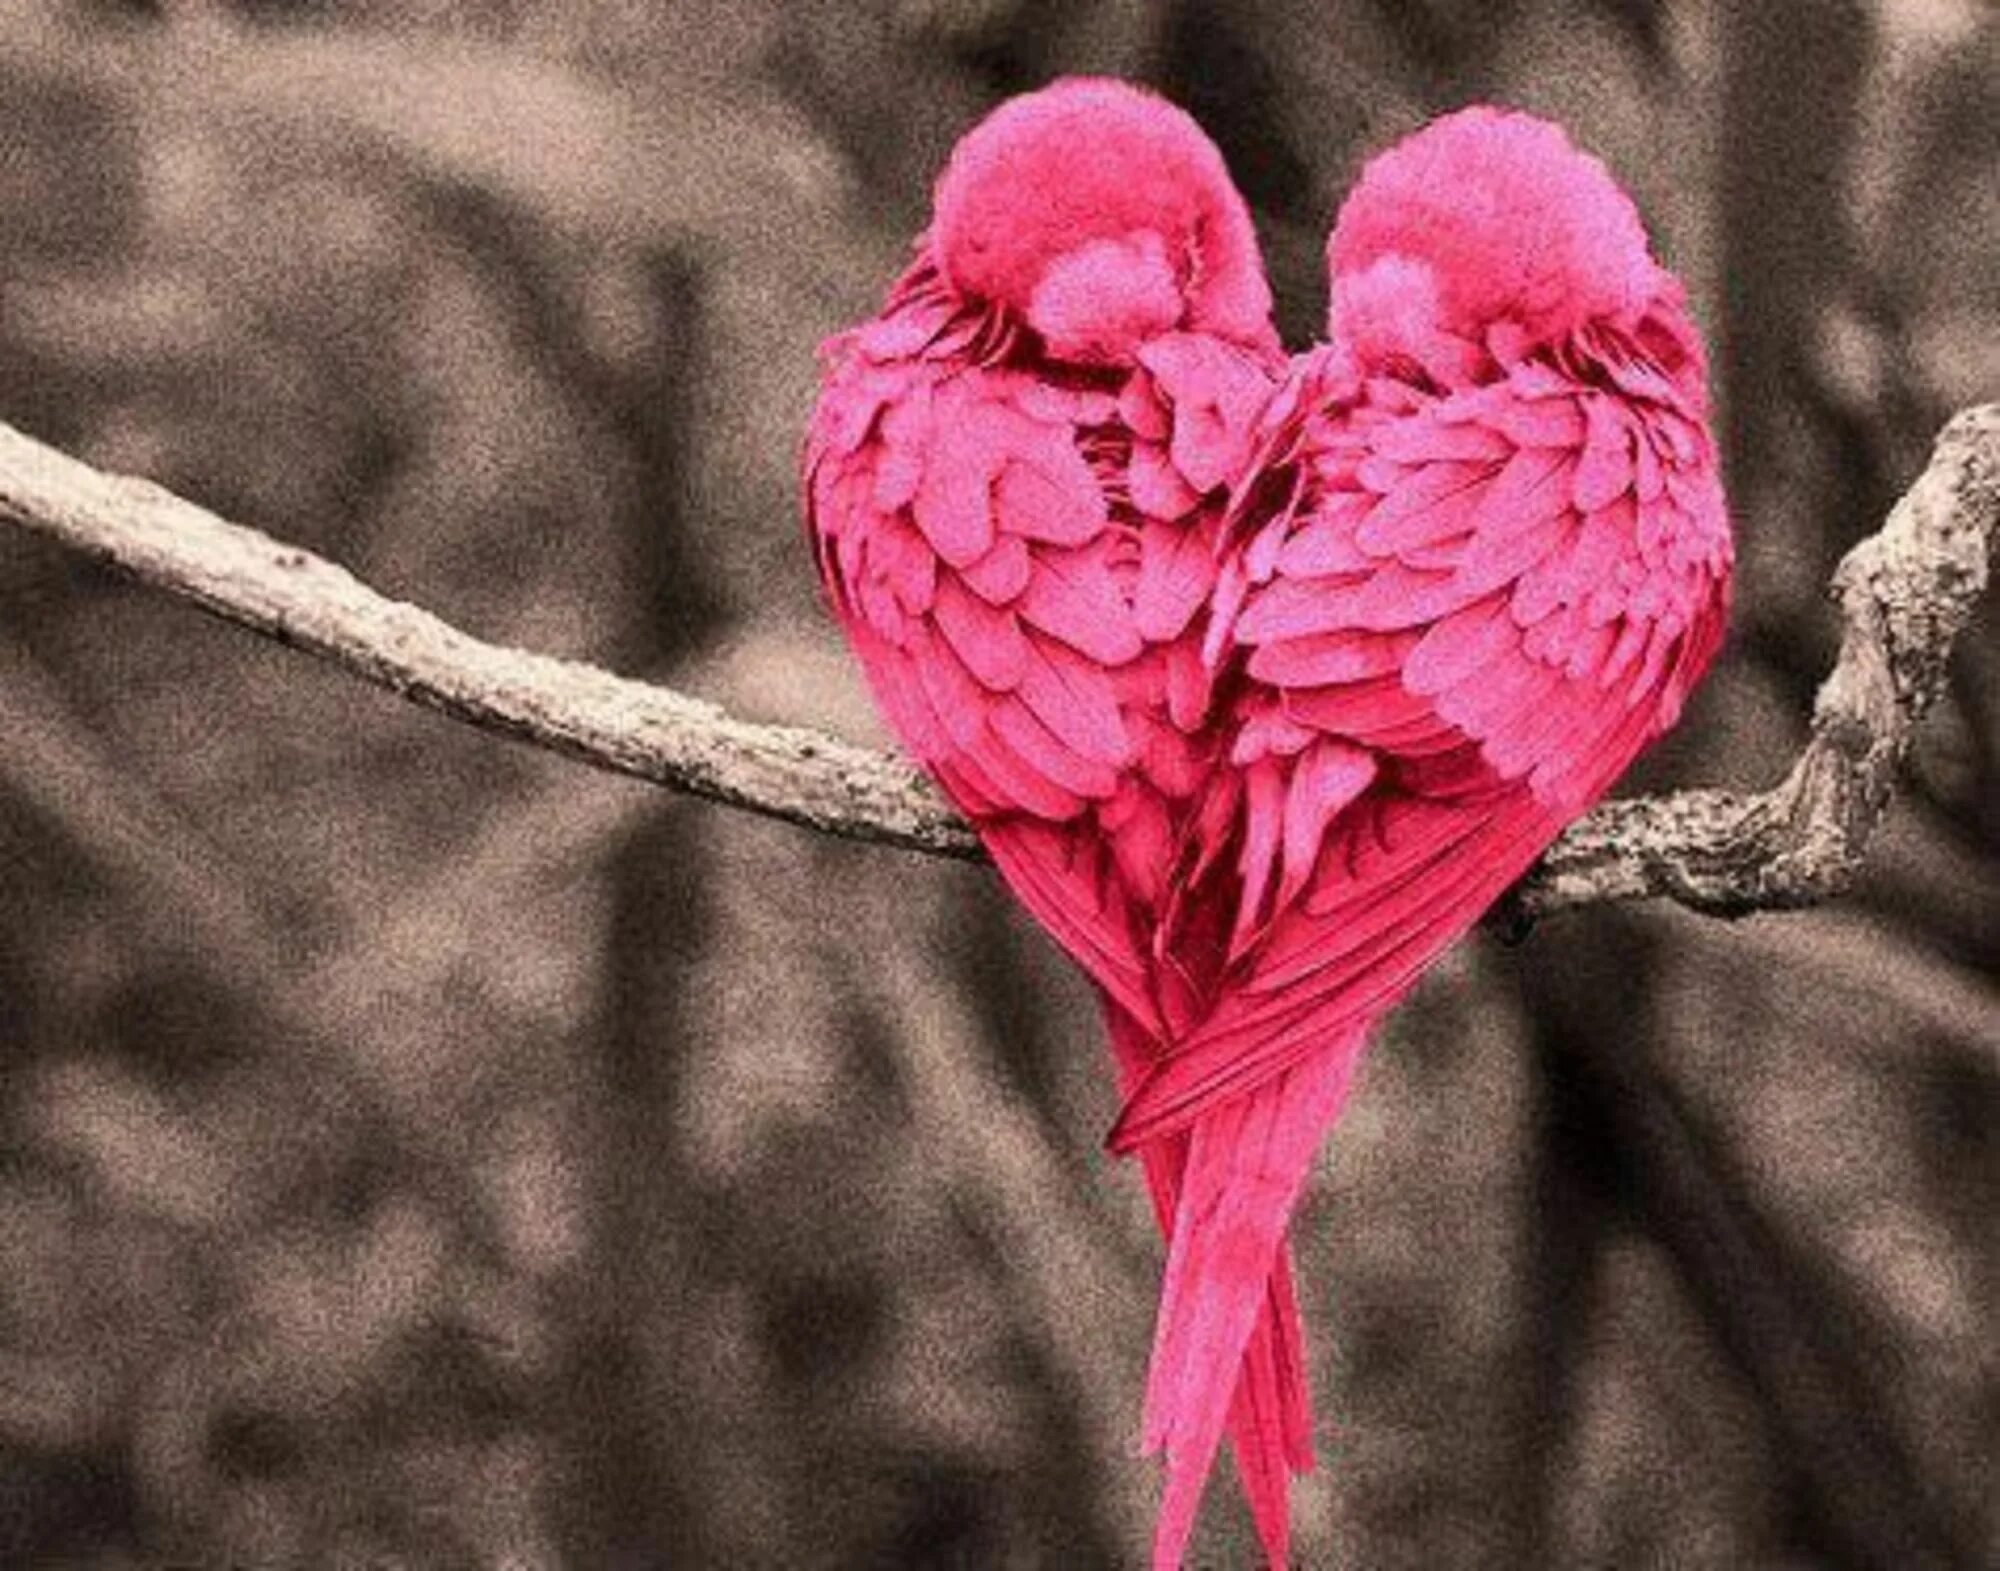 I love birds. Розовая птица. Влюбленные птицы. Красивые птицы. Красивые попугаи.